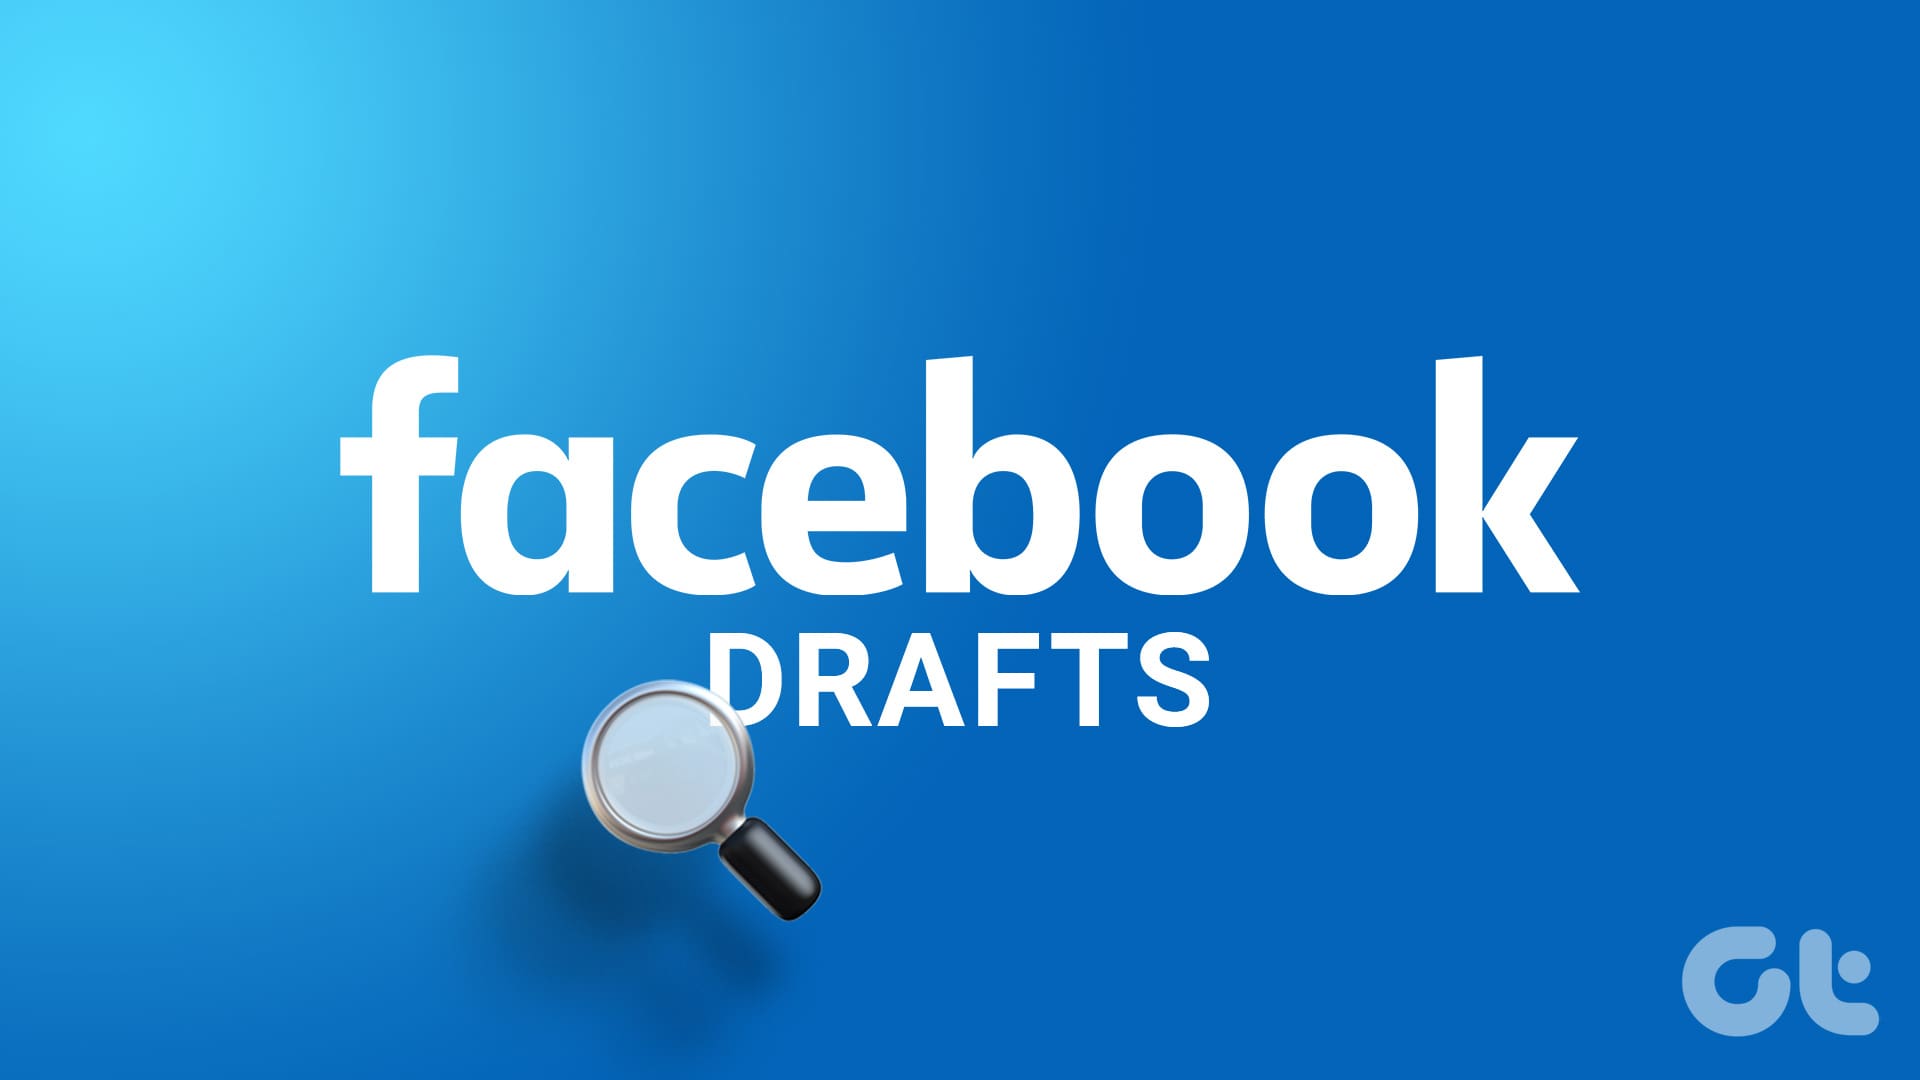 Find Drafts on Facebook